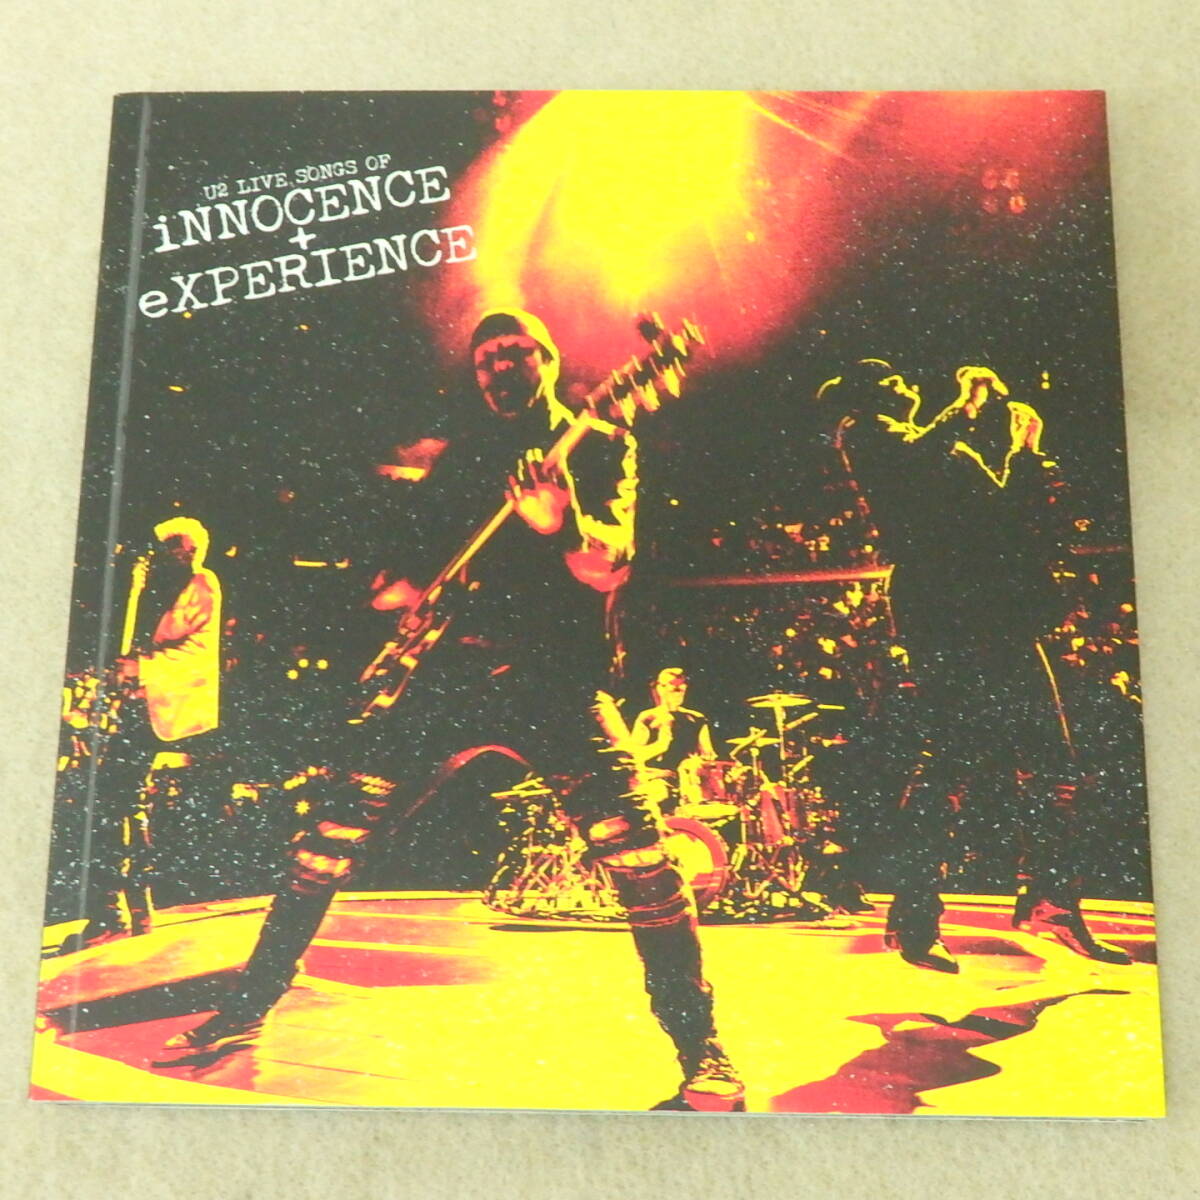 ★非売品CD / U2 LIVE SONGS OF INNOCENCE + EXPERIENCE ファンクラブ限定 大型紙ジャケCD レア盤 2CDの画像1